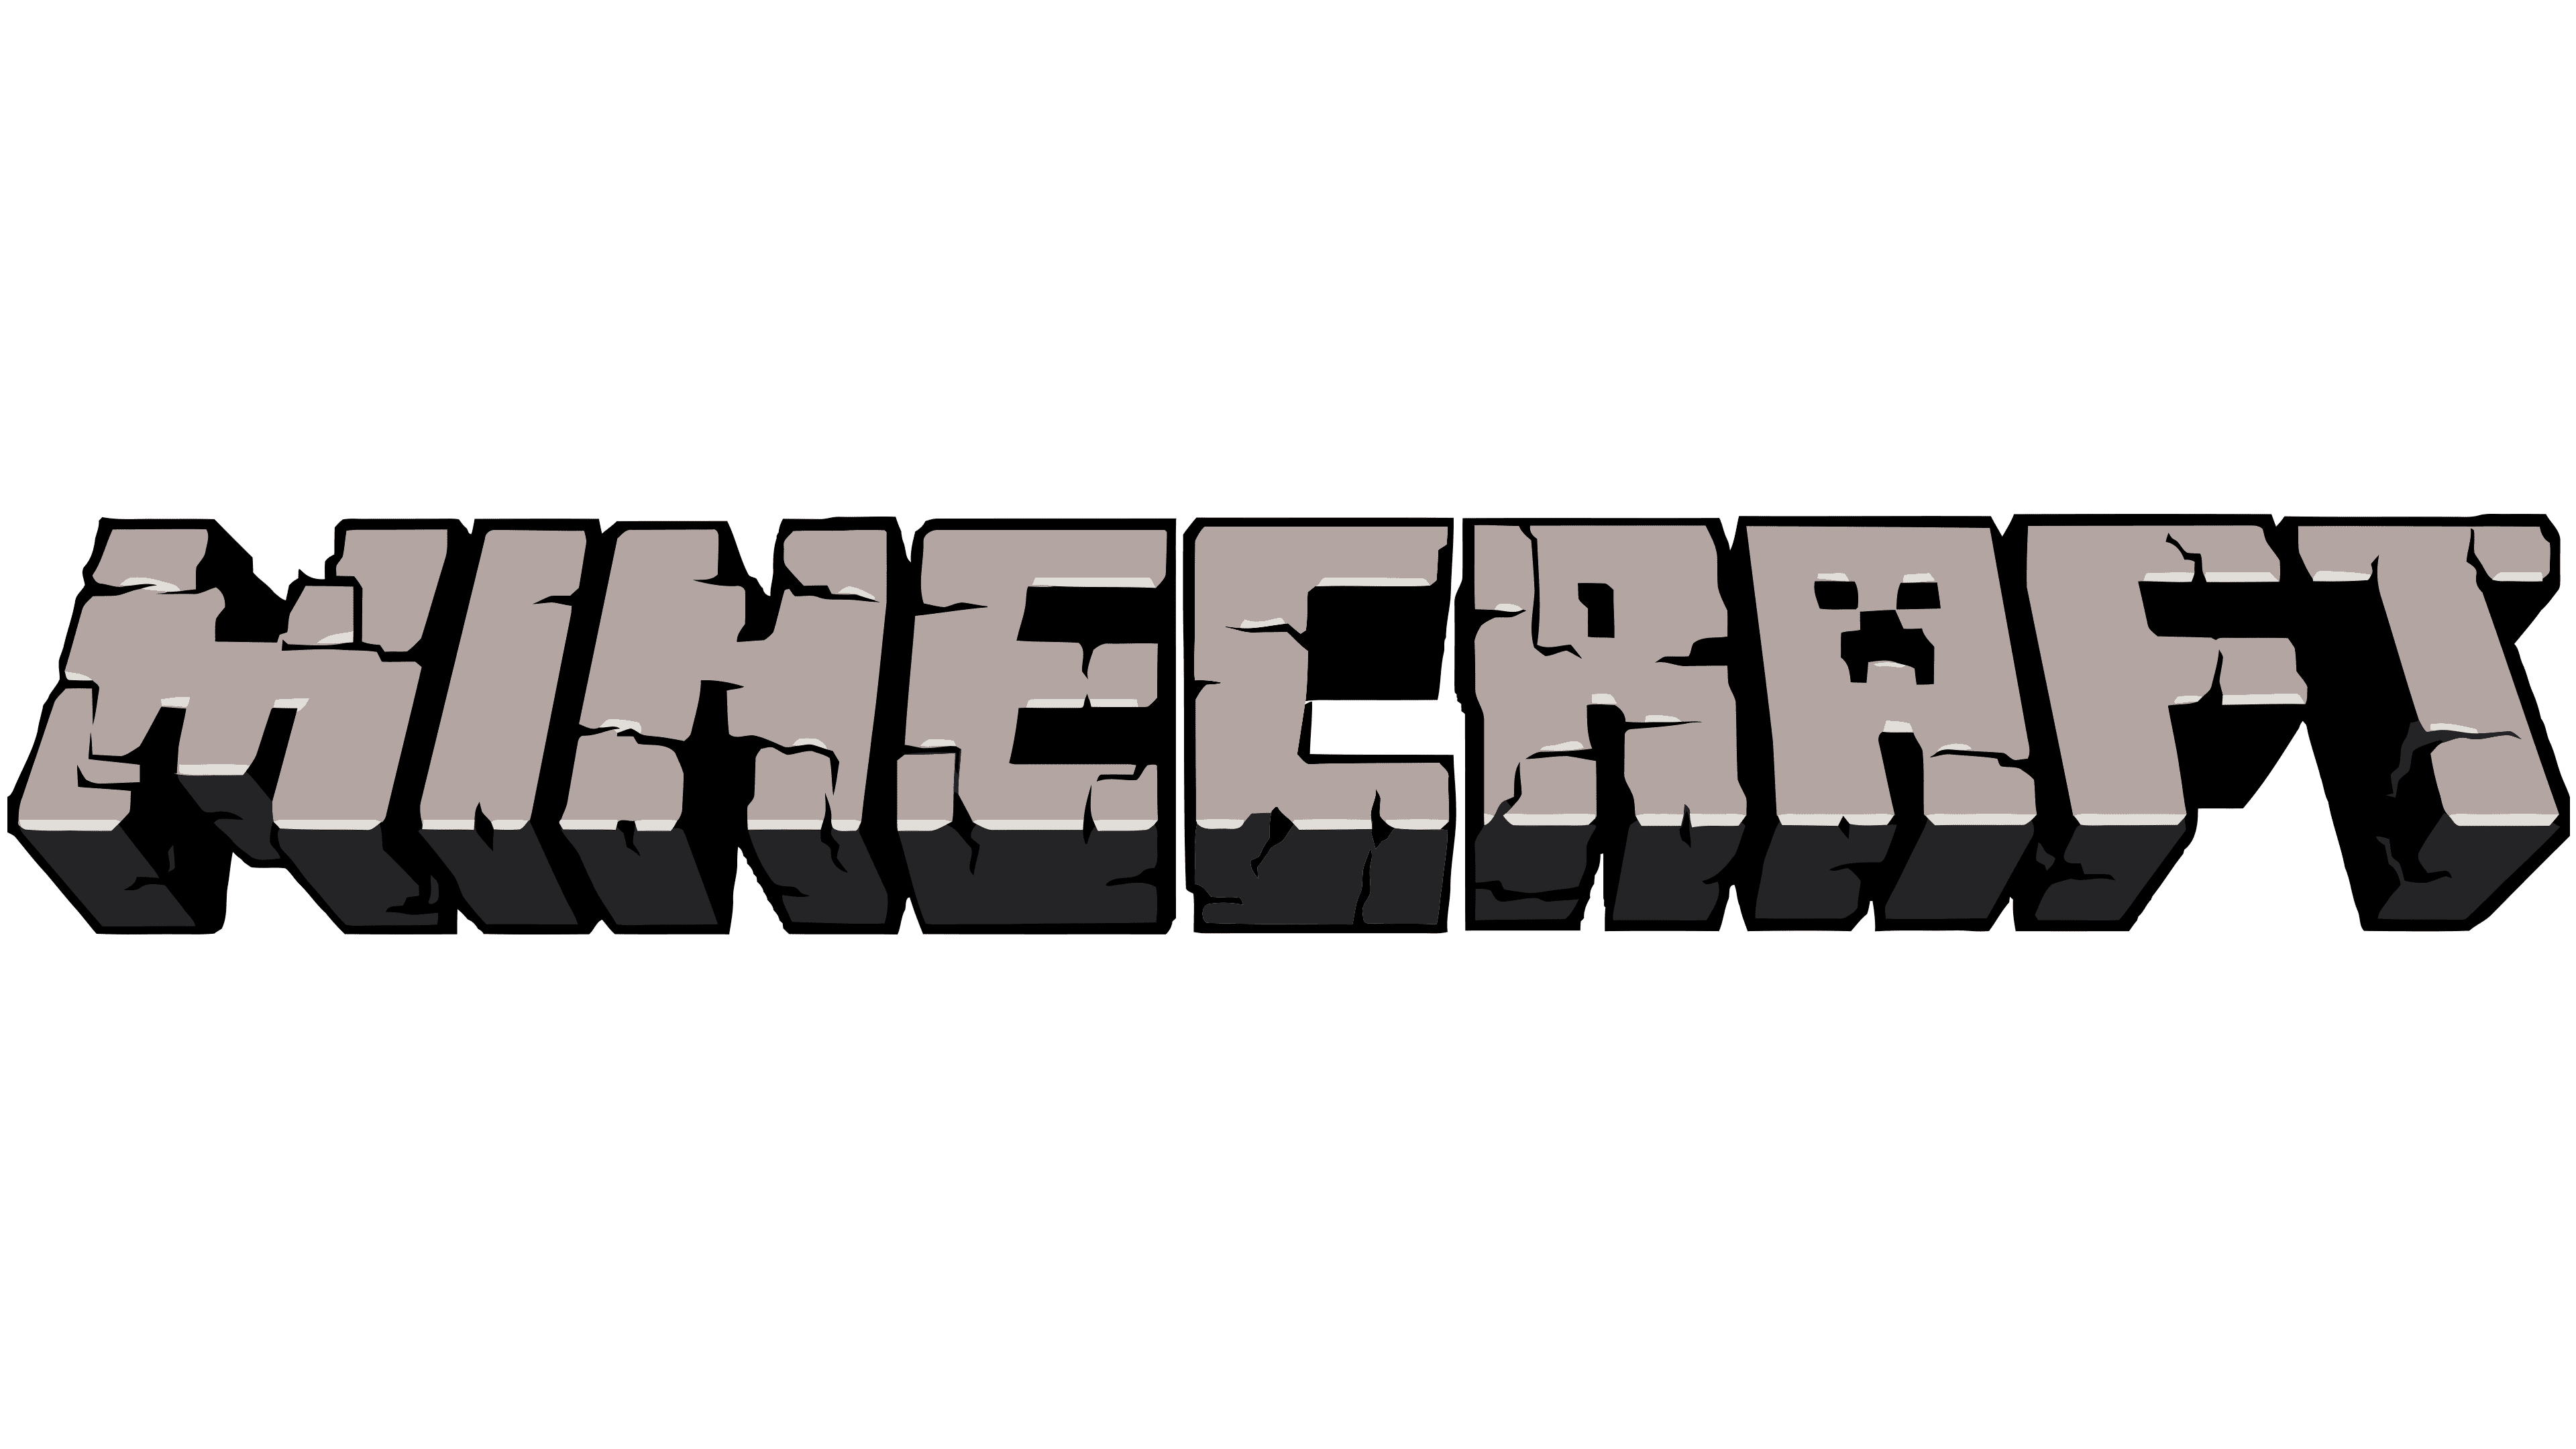 dream minecraft logo